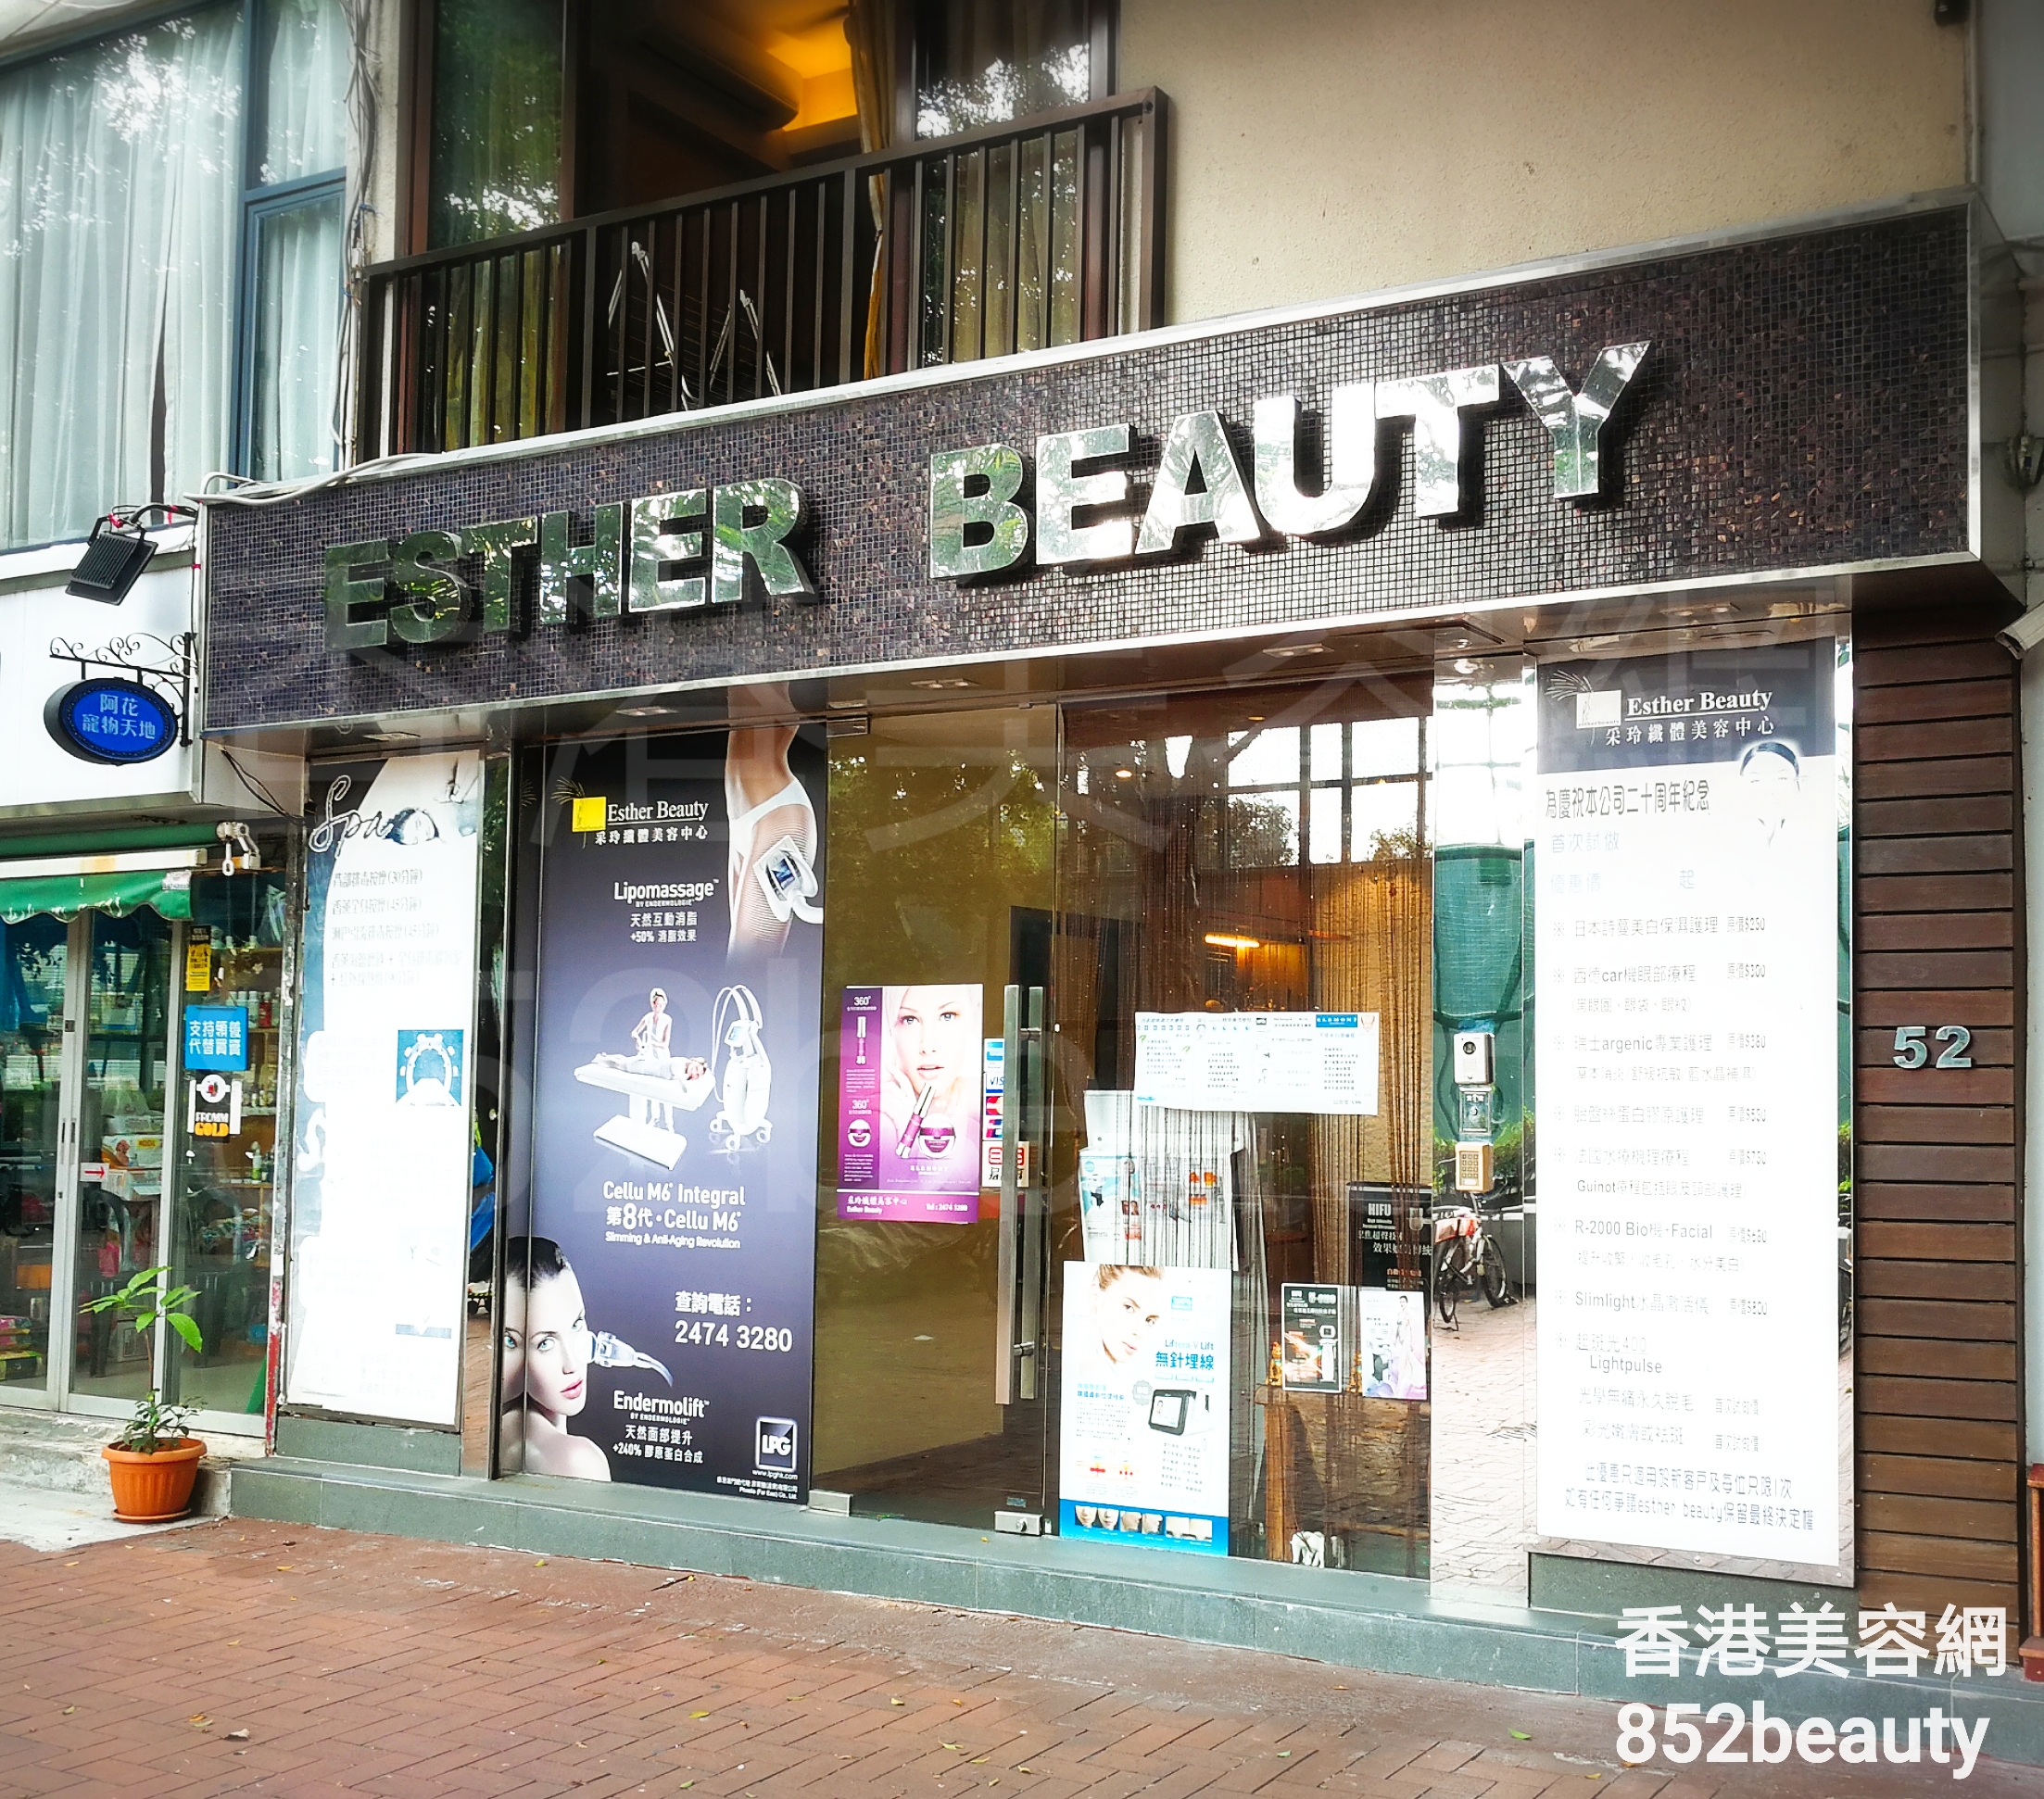 香港美容網 Hong Kong Beauty Salon 美容院 / 美容師: Esther Beauty 采玲纖體美容中心